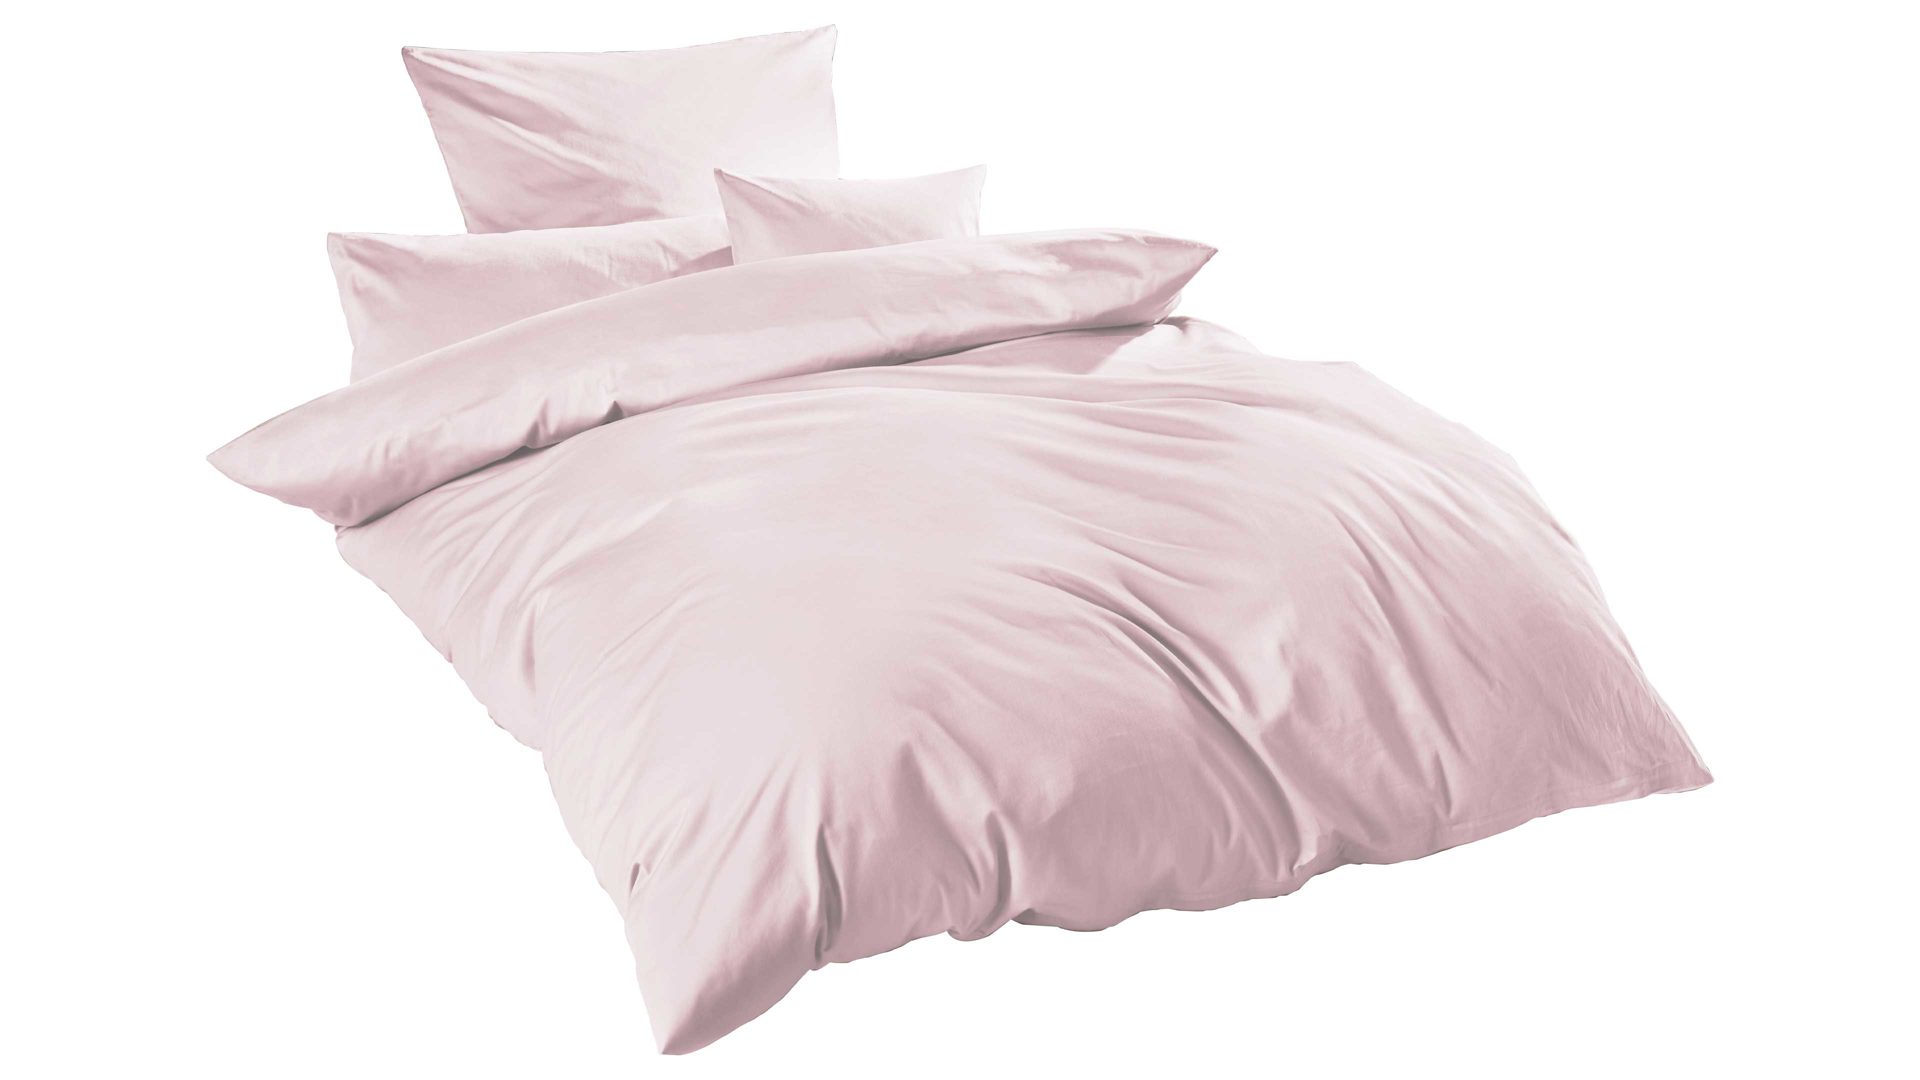 Bettwäsche-Set H.g. hahn haustextilien aus Stoff in Pink HAHN Luxus-Satin-Bettwäsche Sempre puderfarbener Baumwollsatin – zweiteilig, ca. 155 x 200 cm